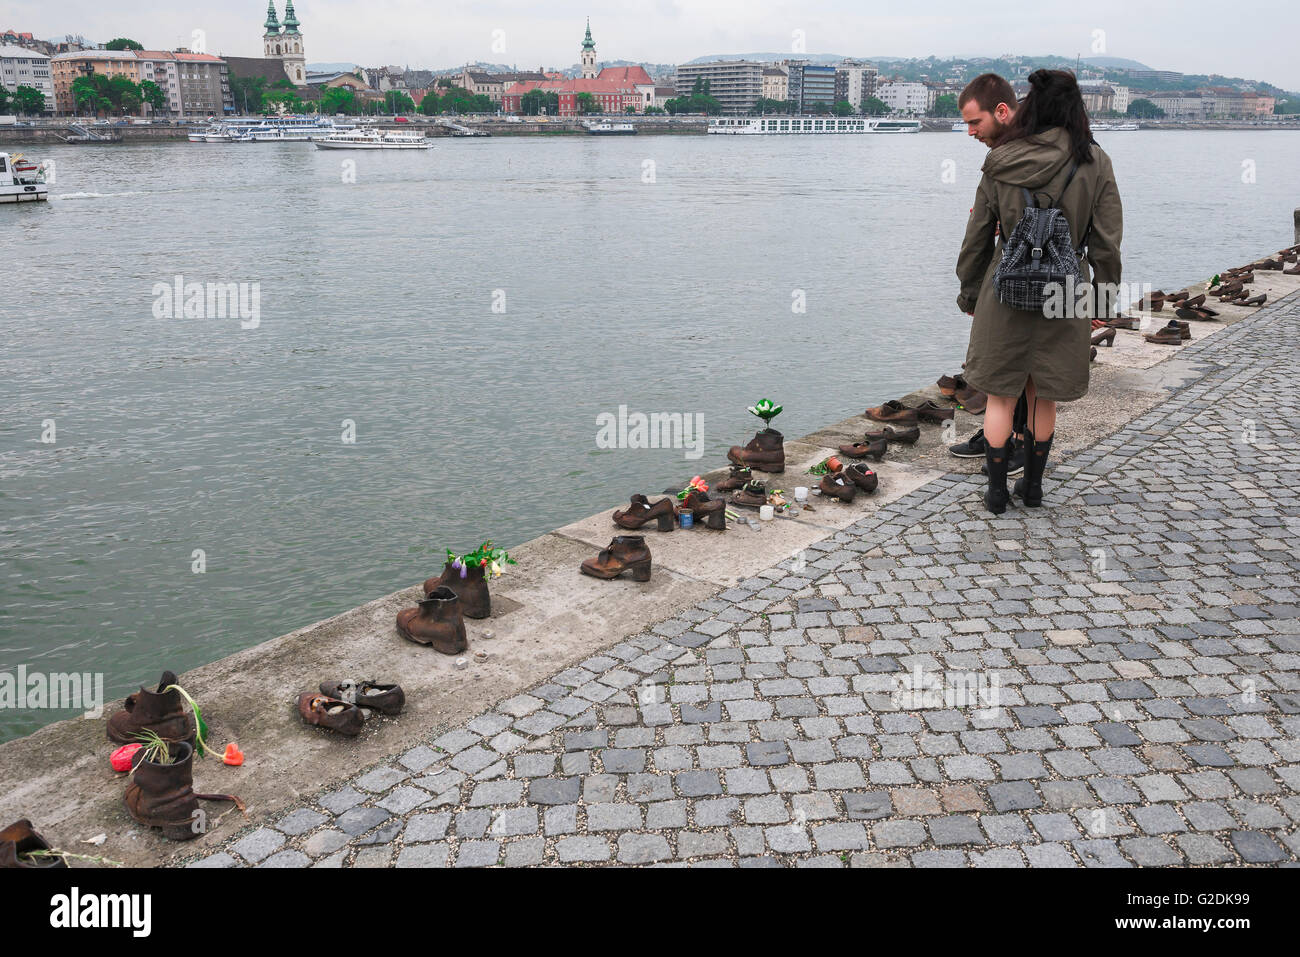 Les touristes visitent le mémorial de l'Holocauste, le long de la rivière du Danube, dans le centre de Budapest, Hongrie, témoin de l'assassinat des juifs dans la SECONDE GUERRE MONDIALE. Banque D'Images